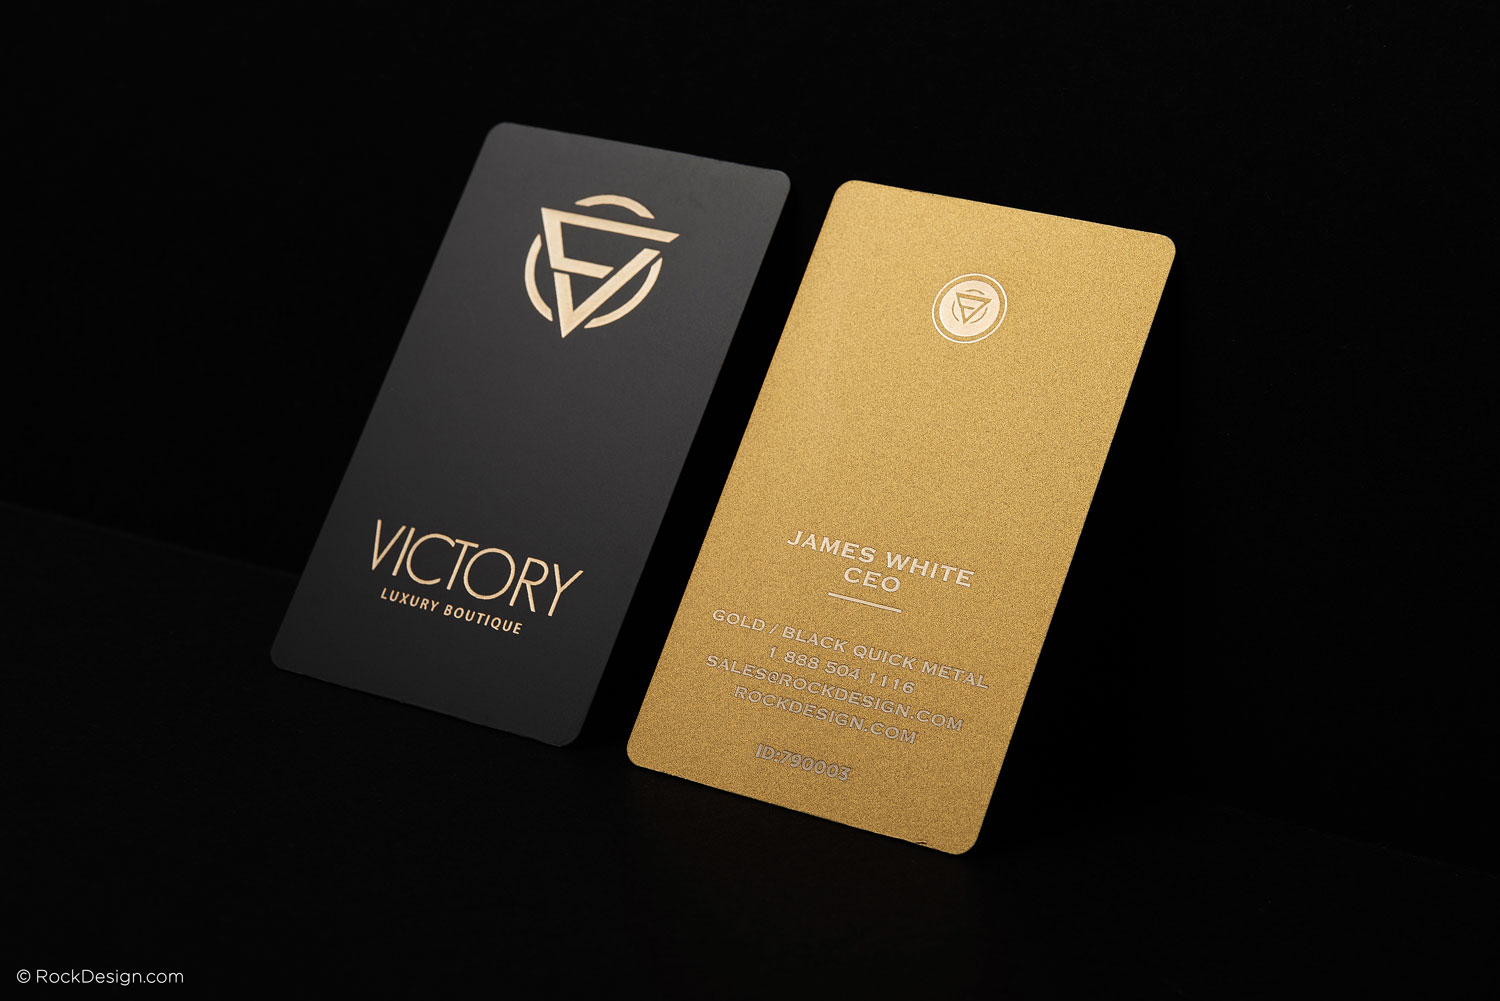 Black & Gold Laser Blanks Metal Business Card (120 Pcs)